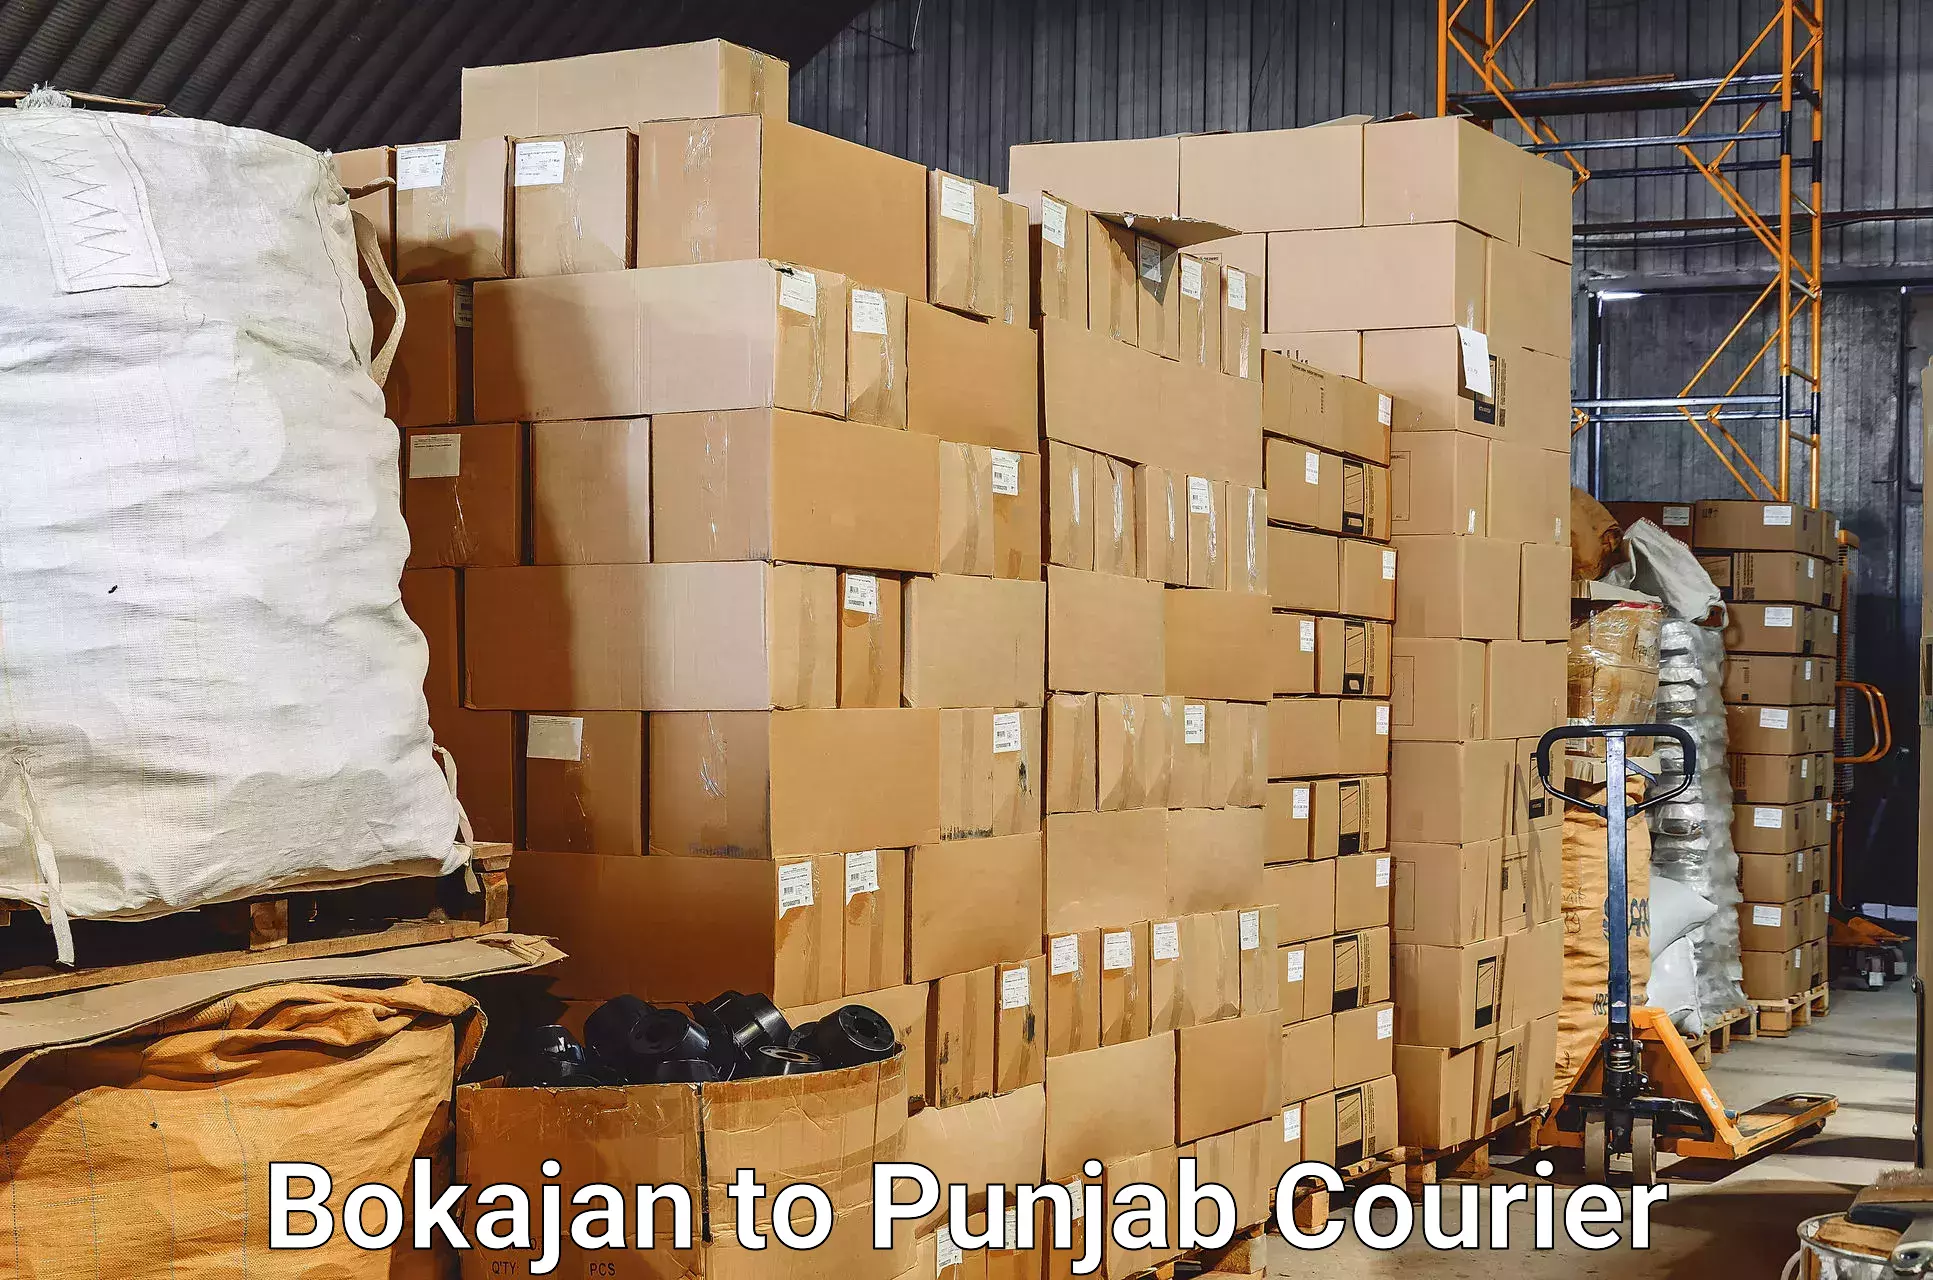 Luggage shipment tracking Bokajan to Punjab